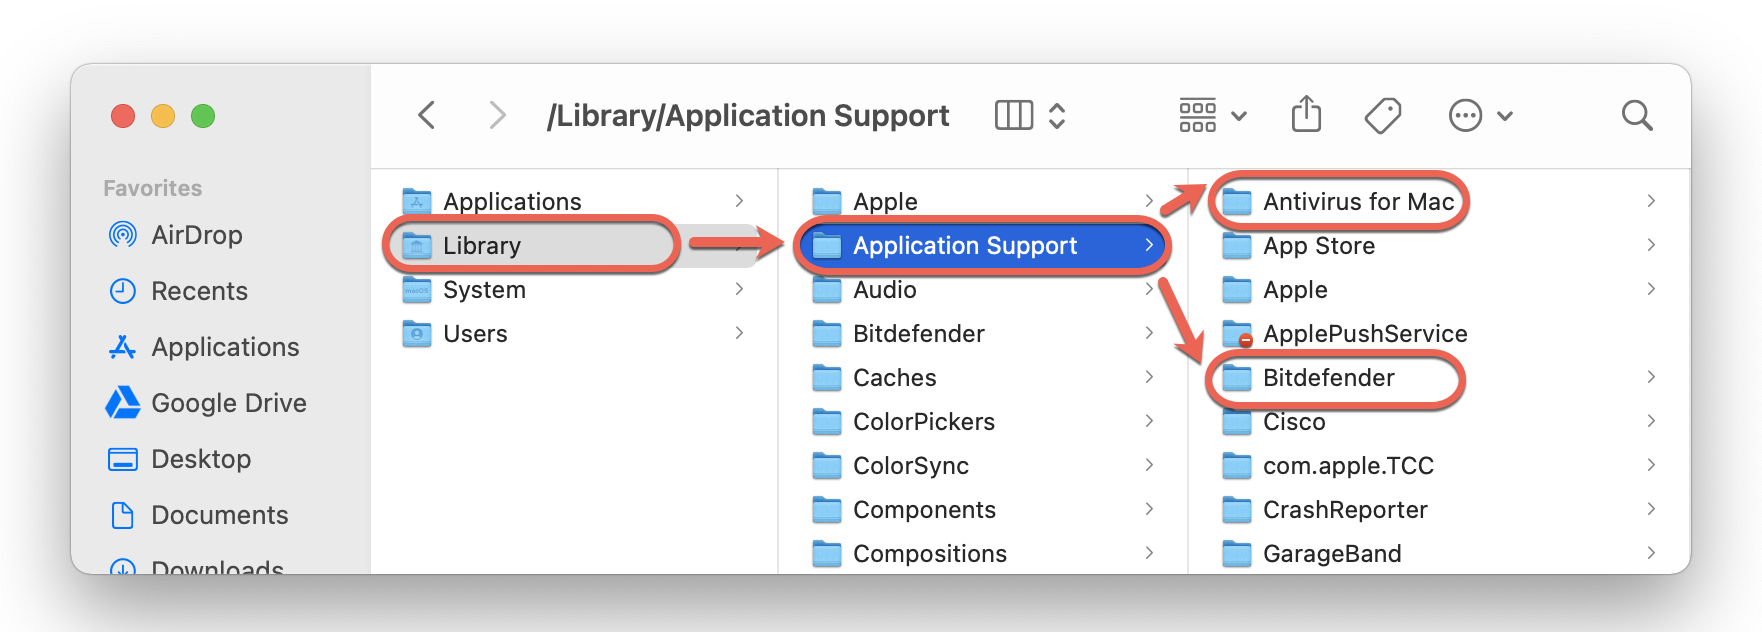 Bitdefender Antivirus for Mac verwijderen - Application Support